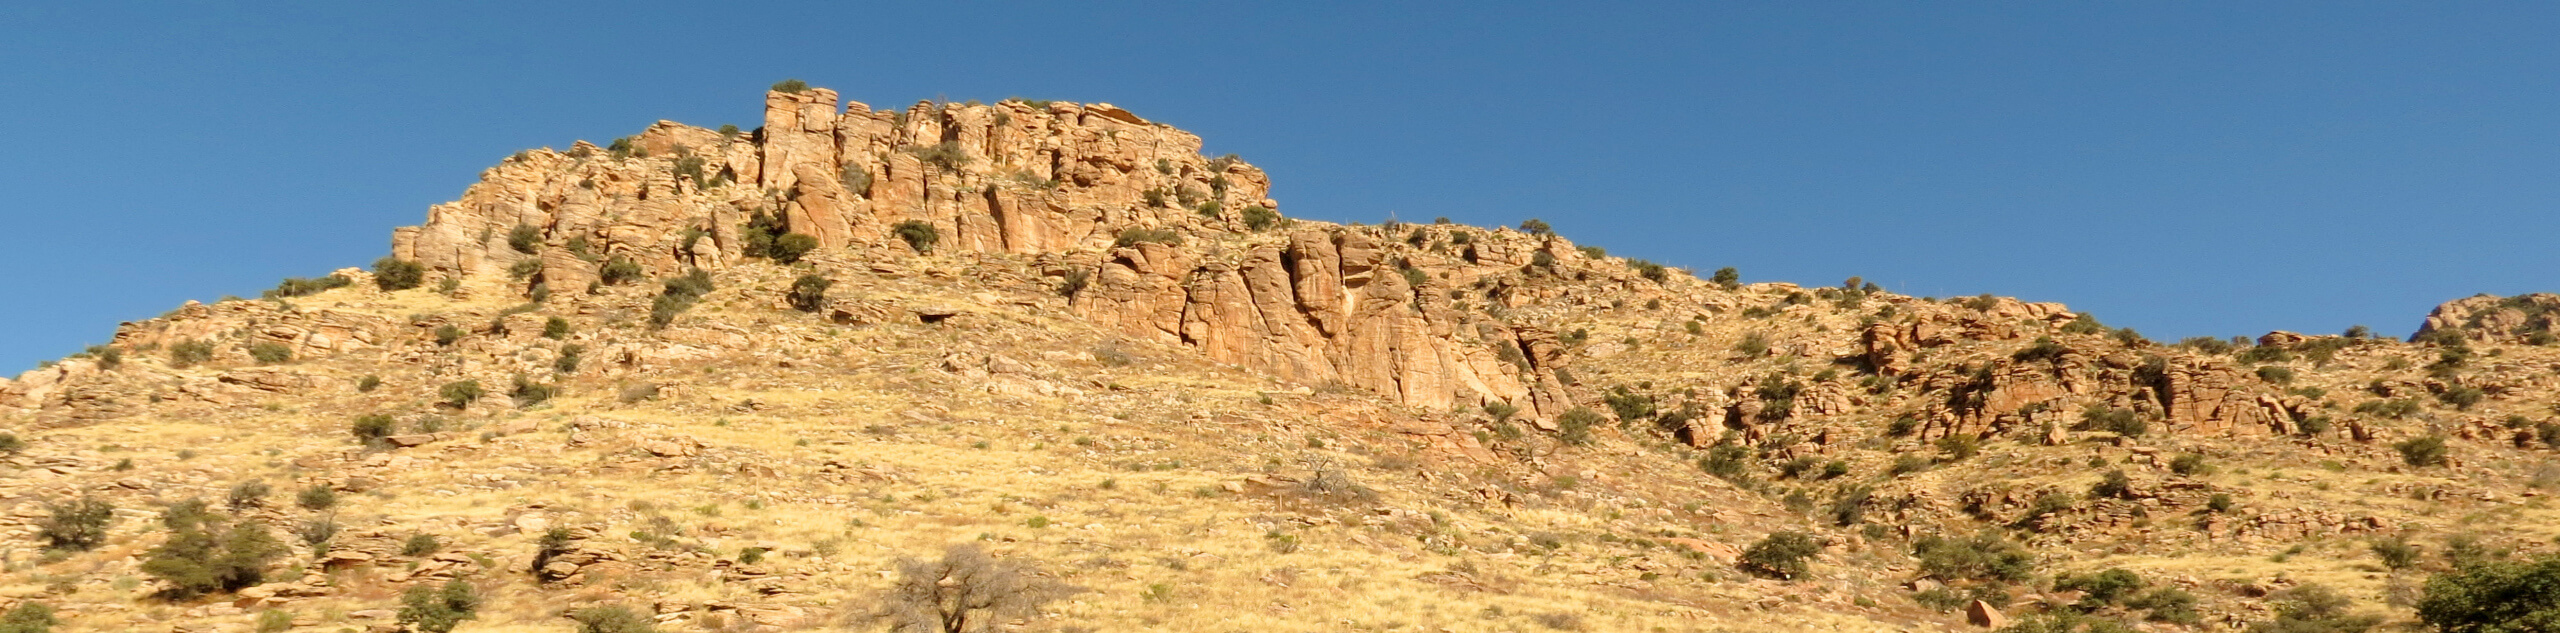 Molino Basin via Arizona Trail